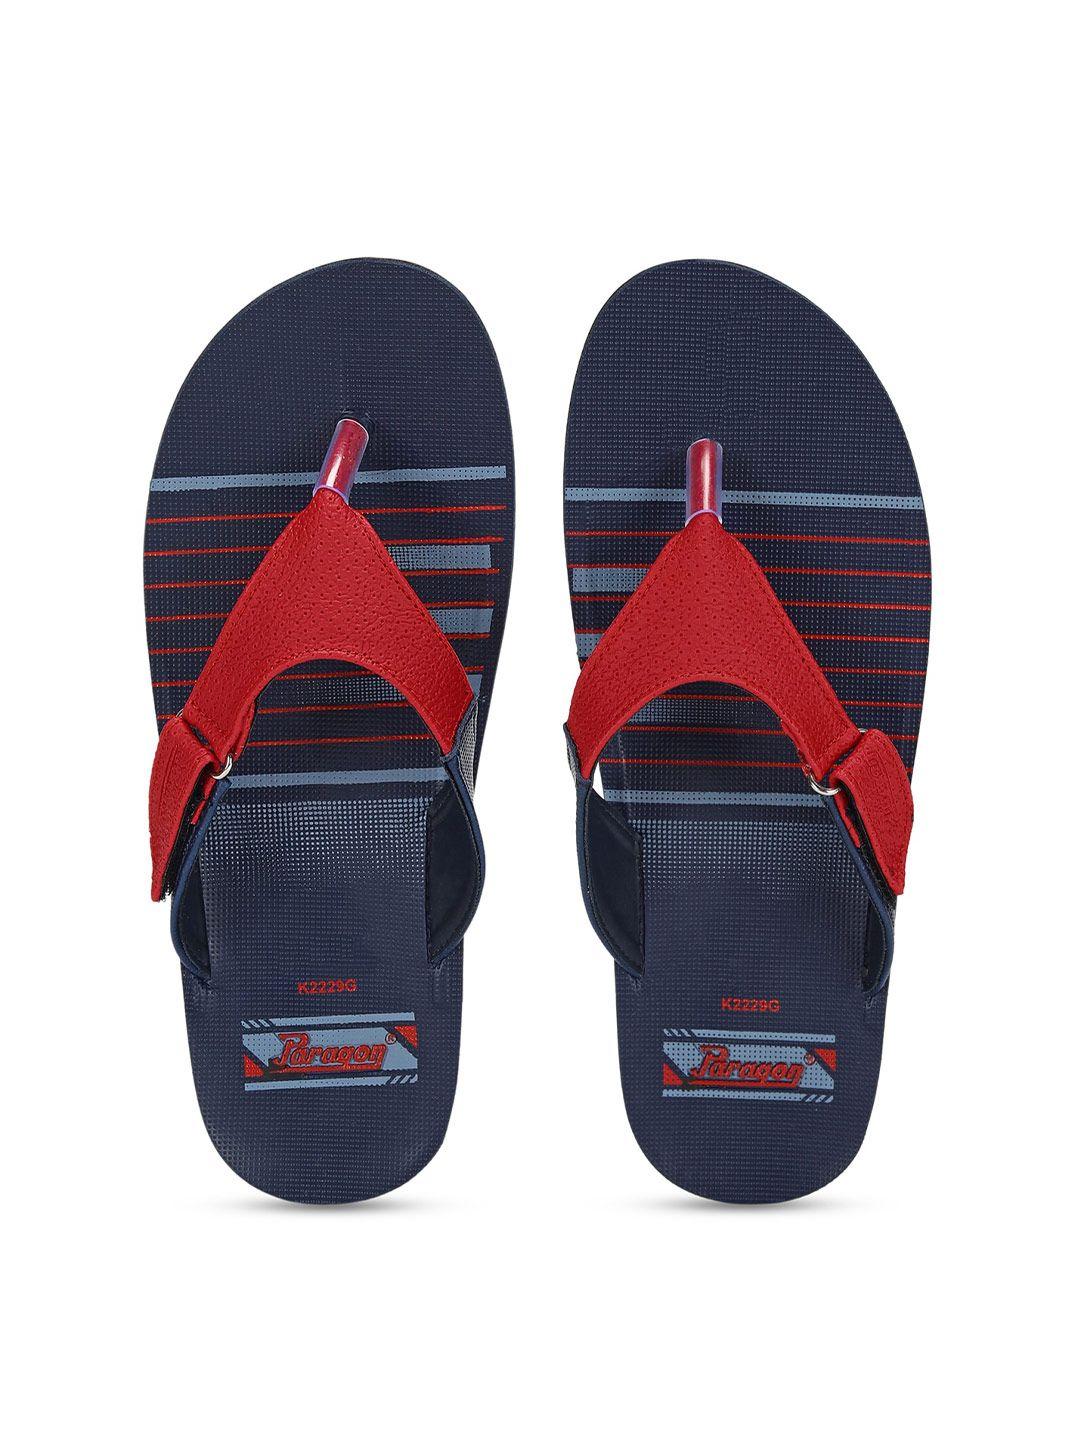 paragon-men-blue-&-red-printed-thong-flip-flops